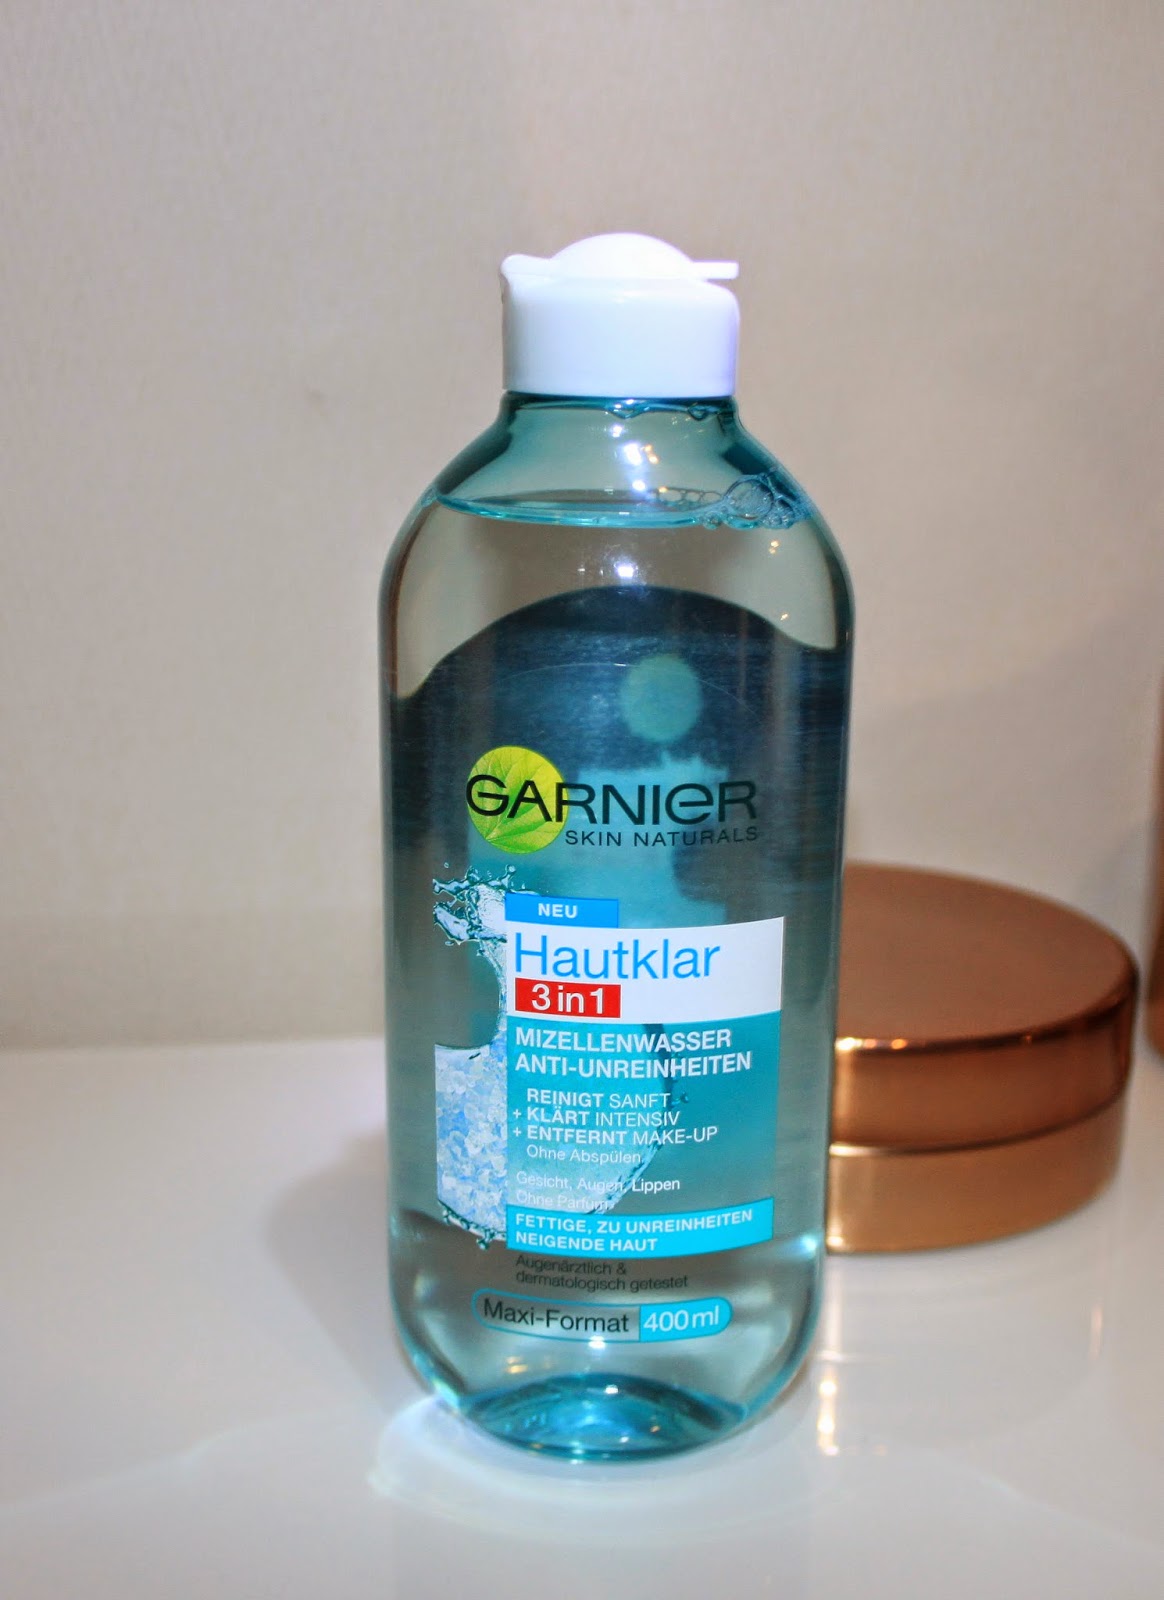 Beauty] Review: Garnier Hautklar Mary the 3in1 Mizellenwasser around goes Anti-Unreinheiten World 